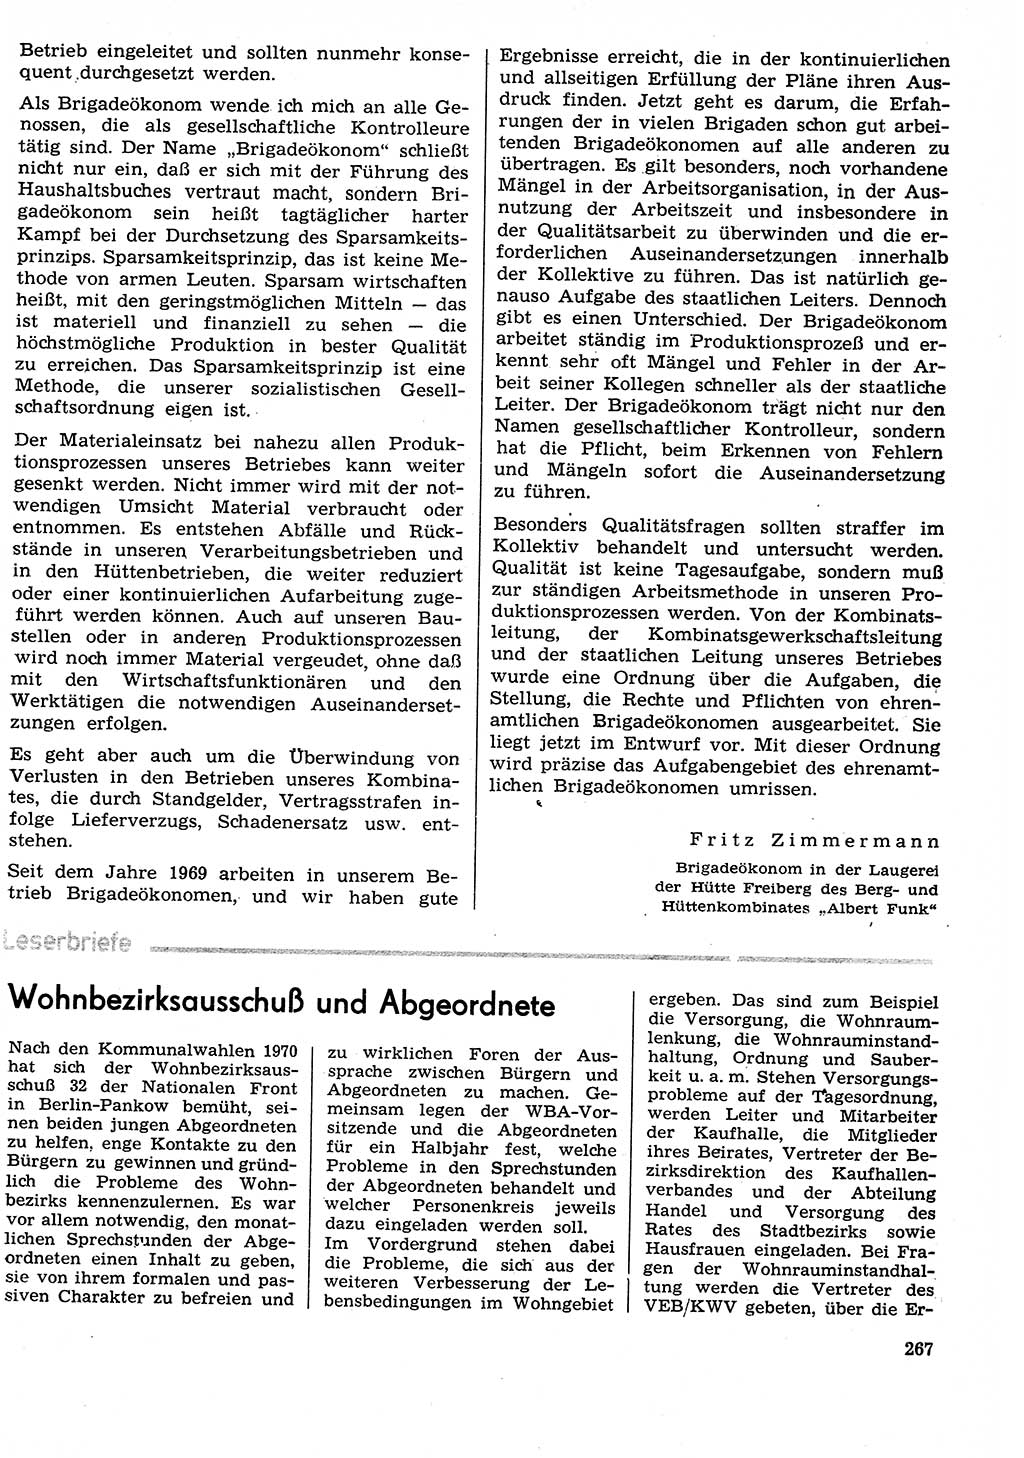 Neuer Weg (NW), Organ des Zentralkomitees (ZK) der SED (Sozialistische Einheitspartei Deutschlands) fÃ¼r Fragen des Parteilebens, 29. Jahrgang [Deutsche Demokratische Republik (DDR)] 1974, Seite 267 (NW ZK SED DDR 1974, S. 267)